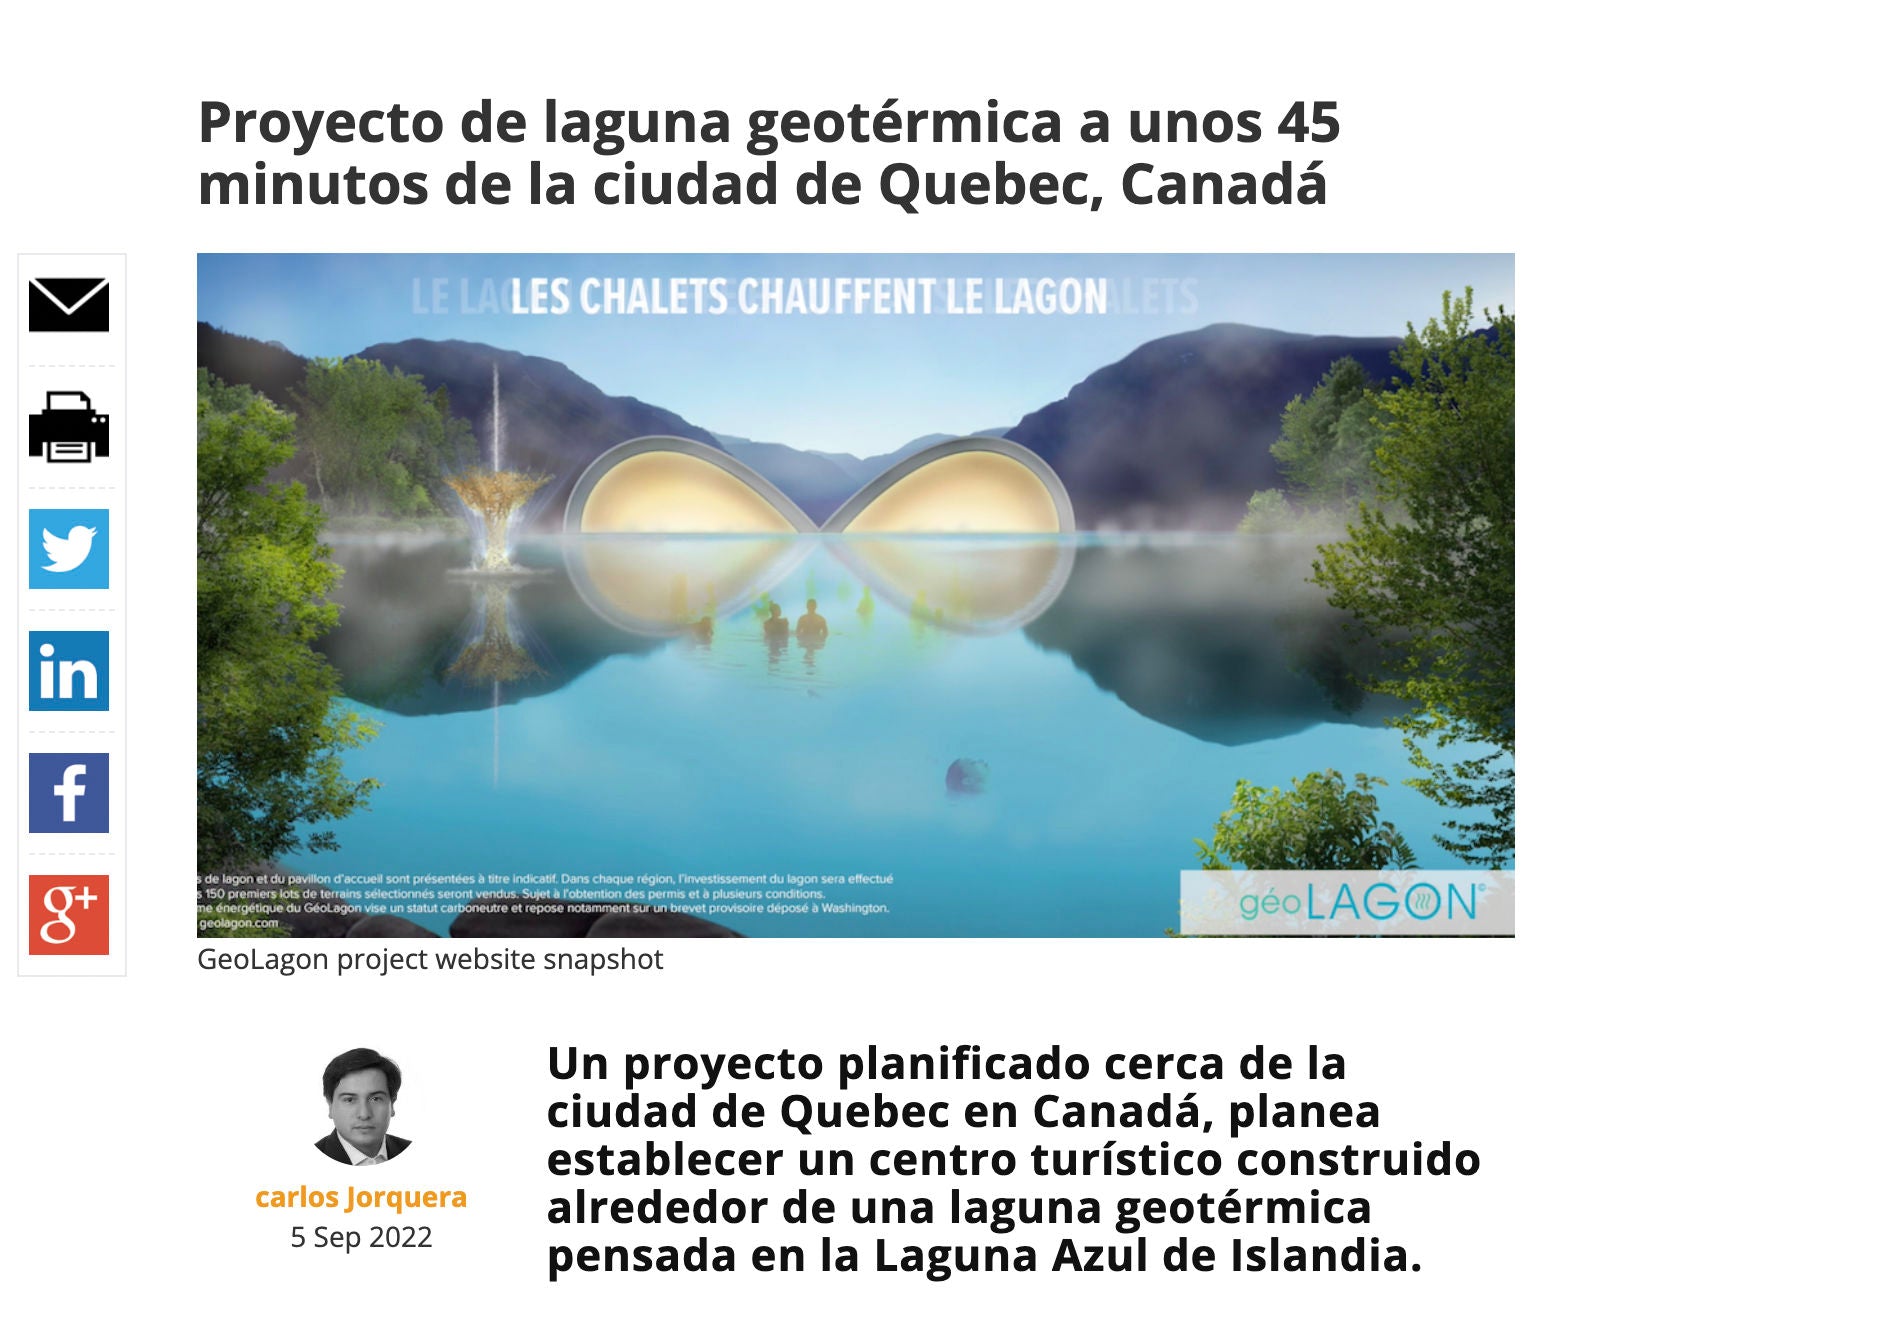 [ES] Proyecto de laguna geotérmica a unos 45 minutos de la ciudad de Quebec, Canadá